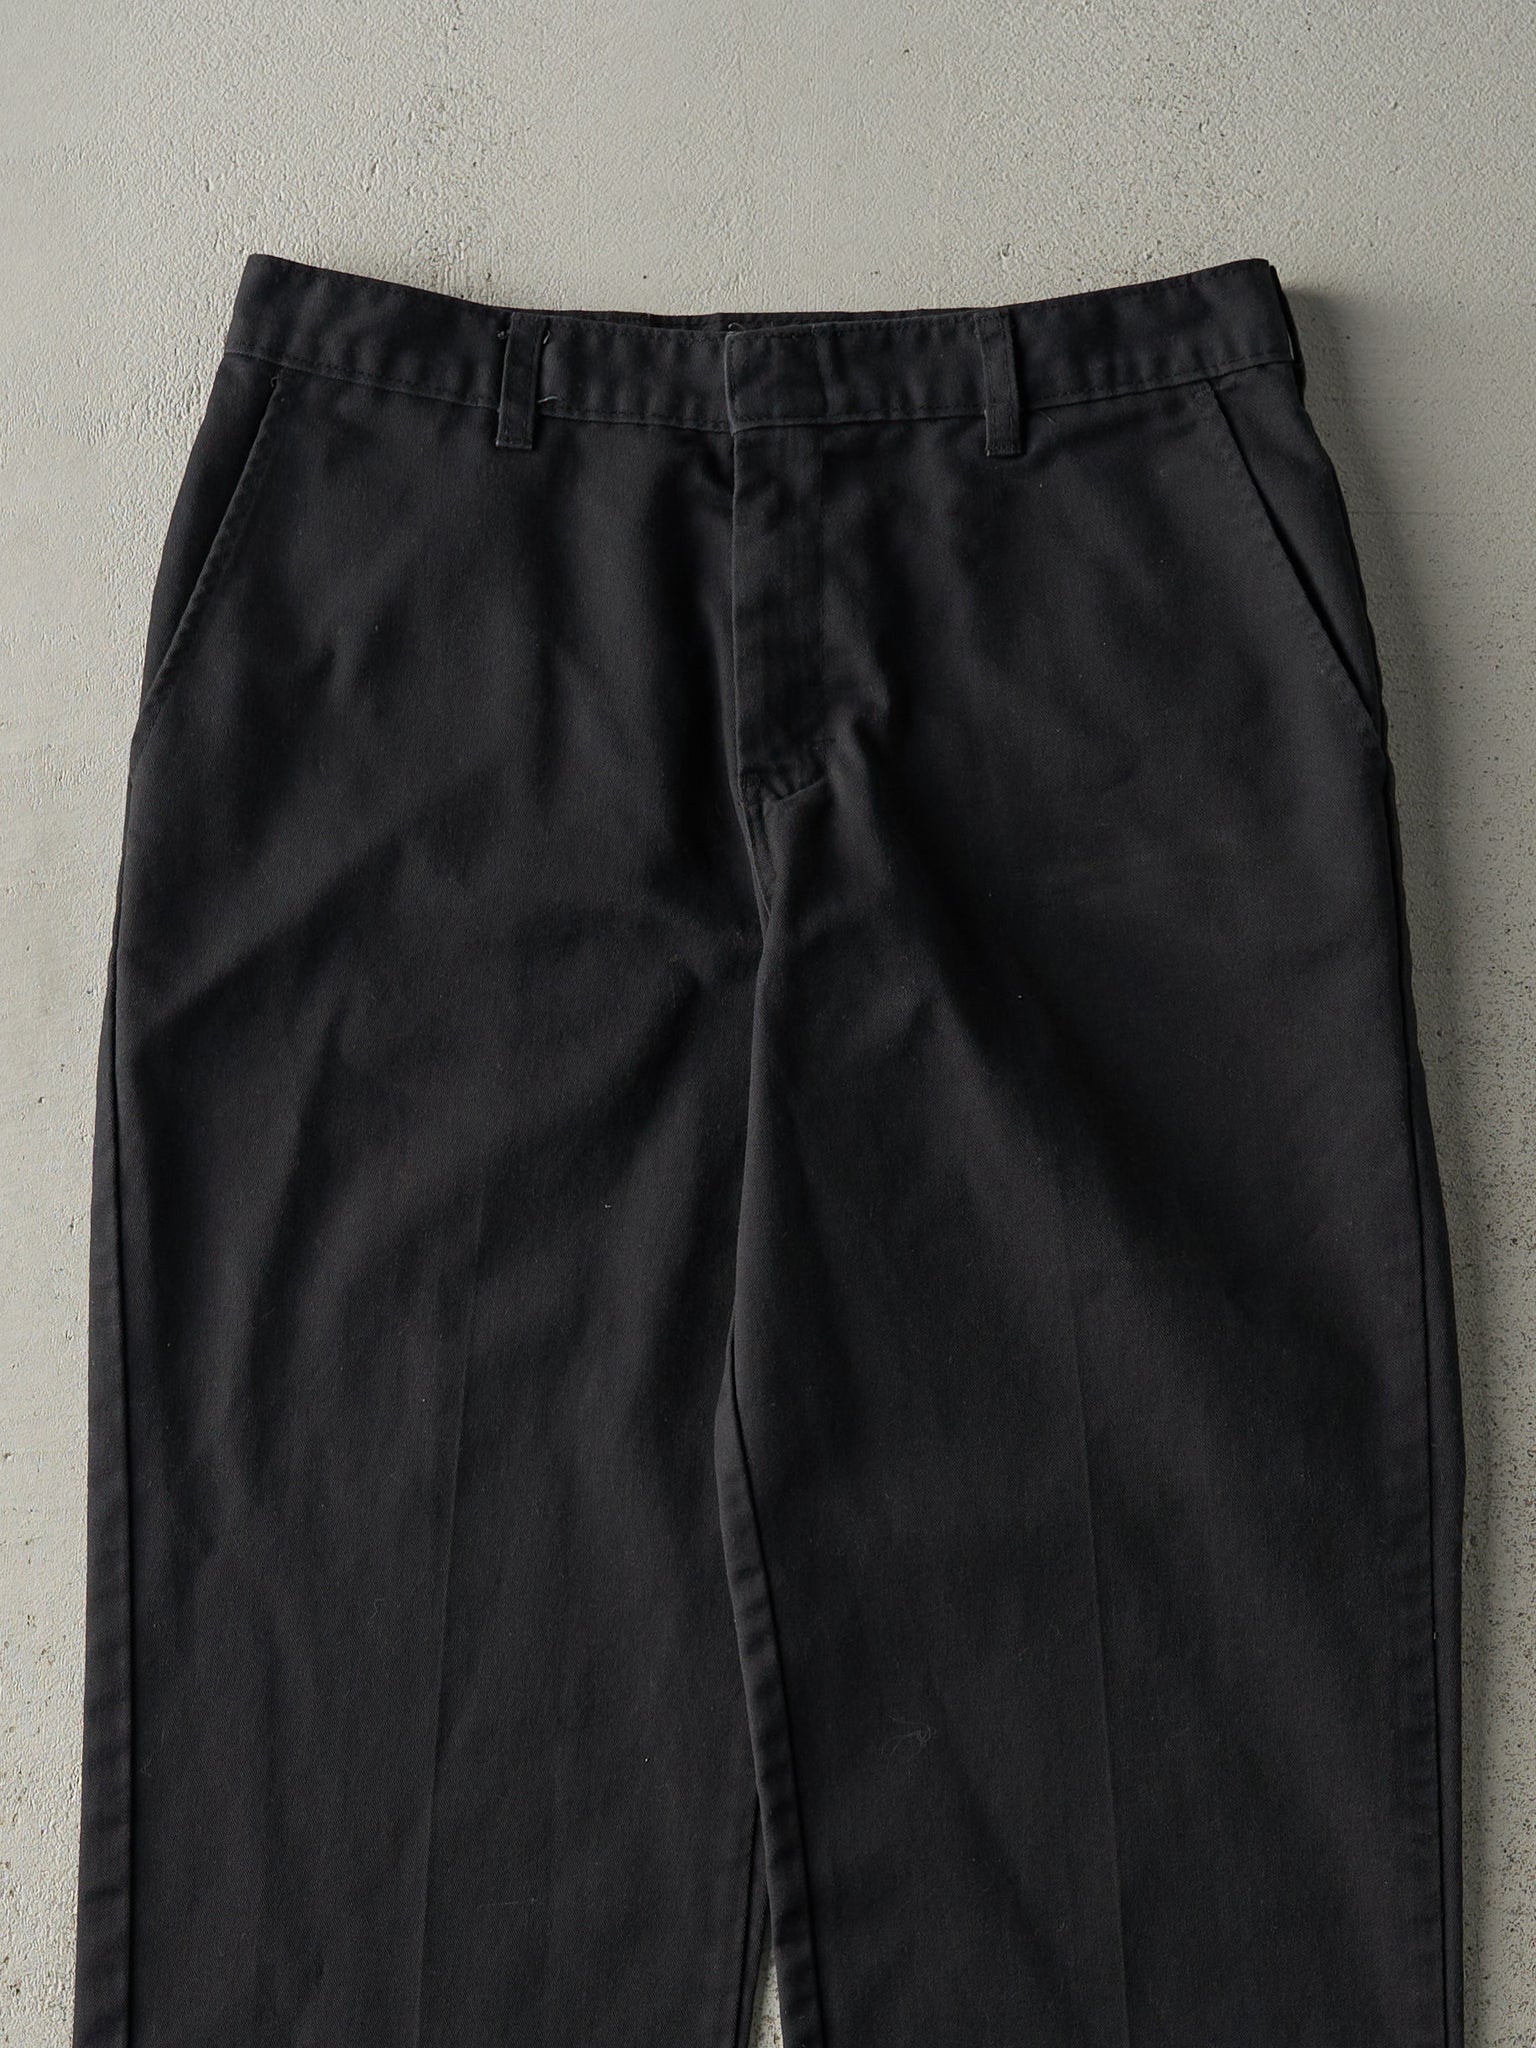 Vintage Y2K Black Dickies Work Pants (31x31)